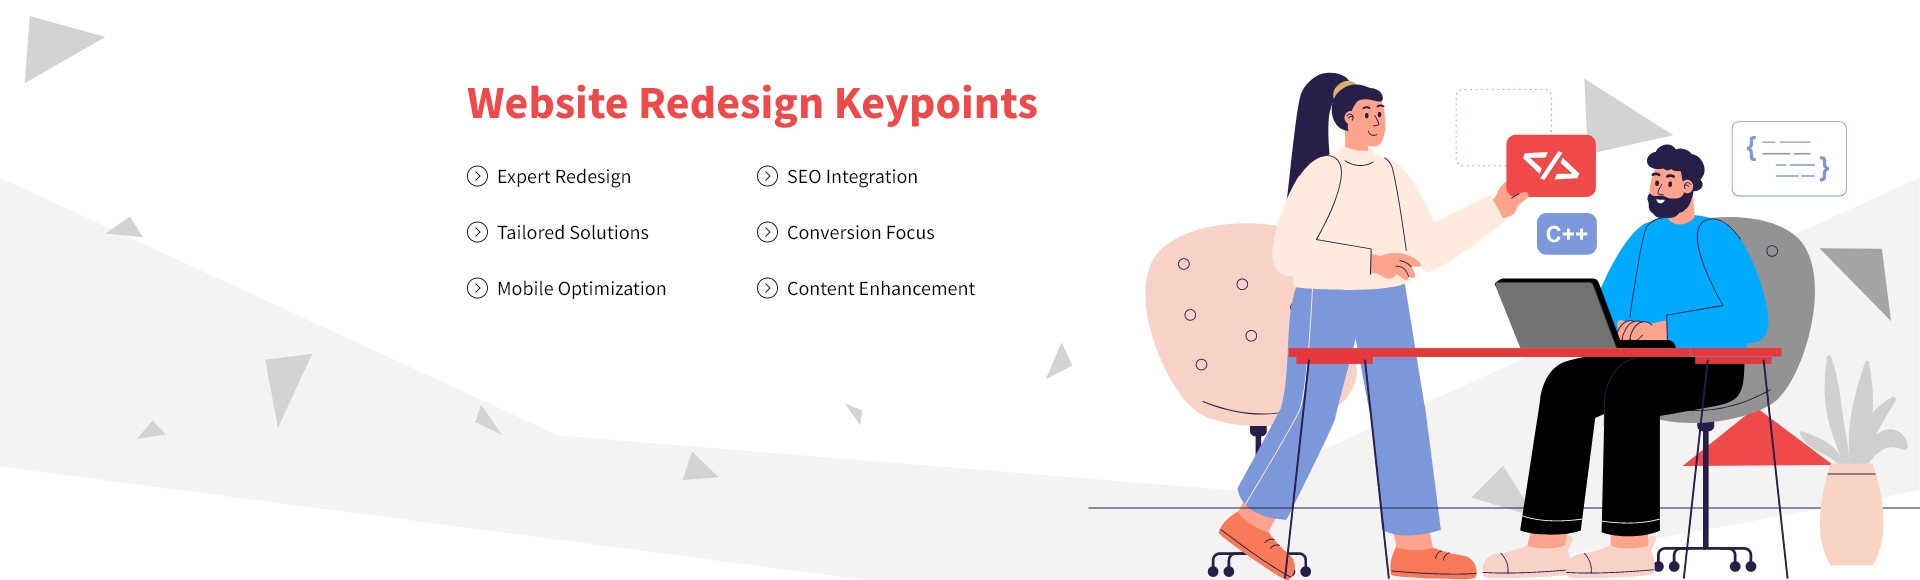 Website Redesign Keypoints